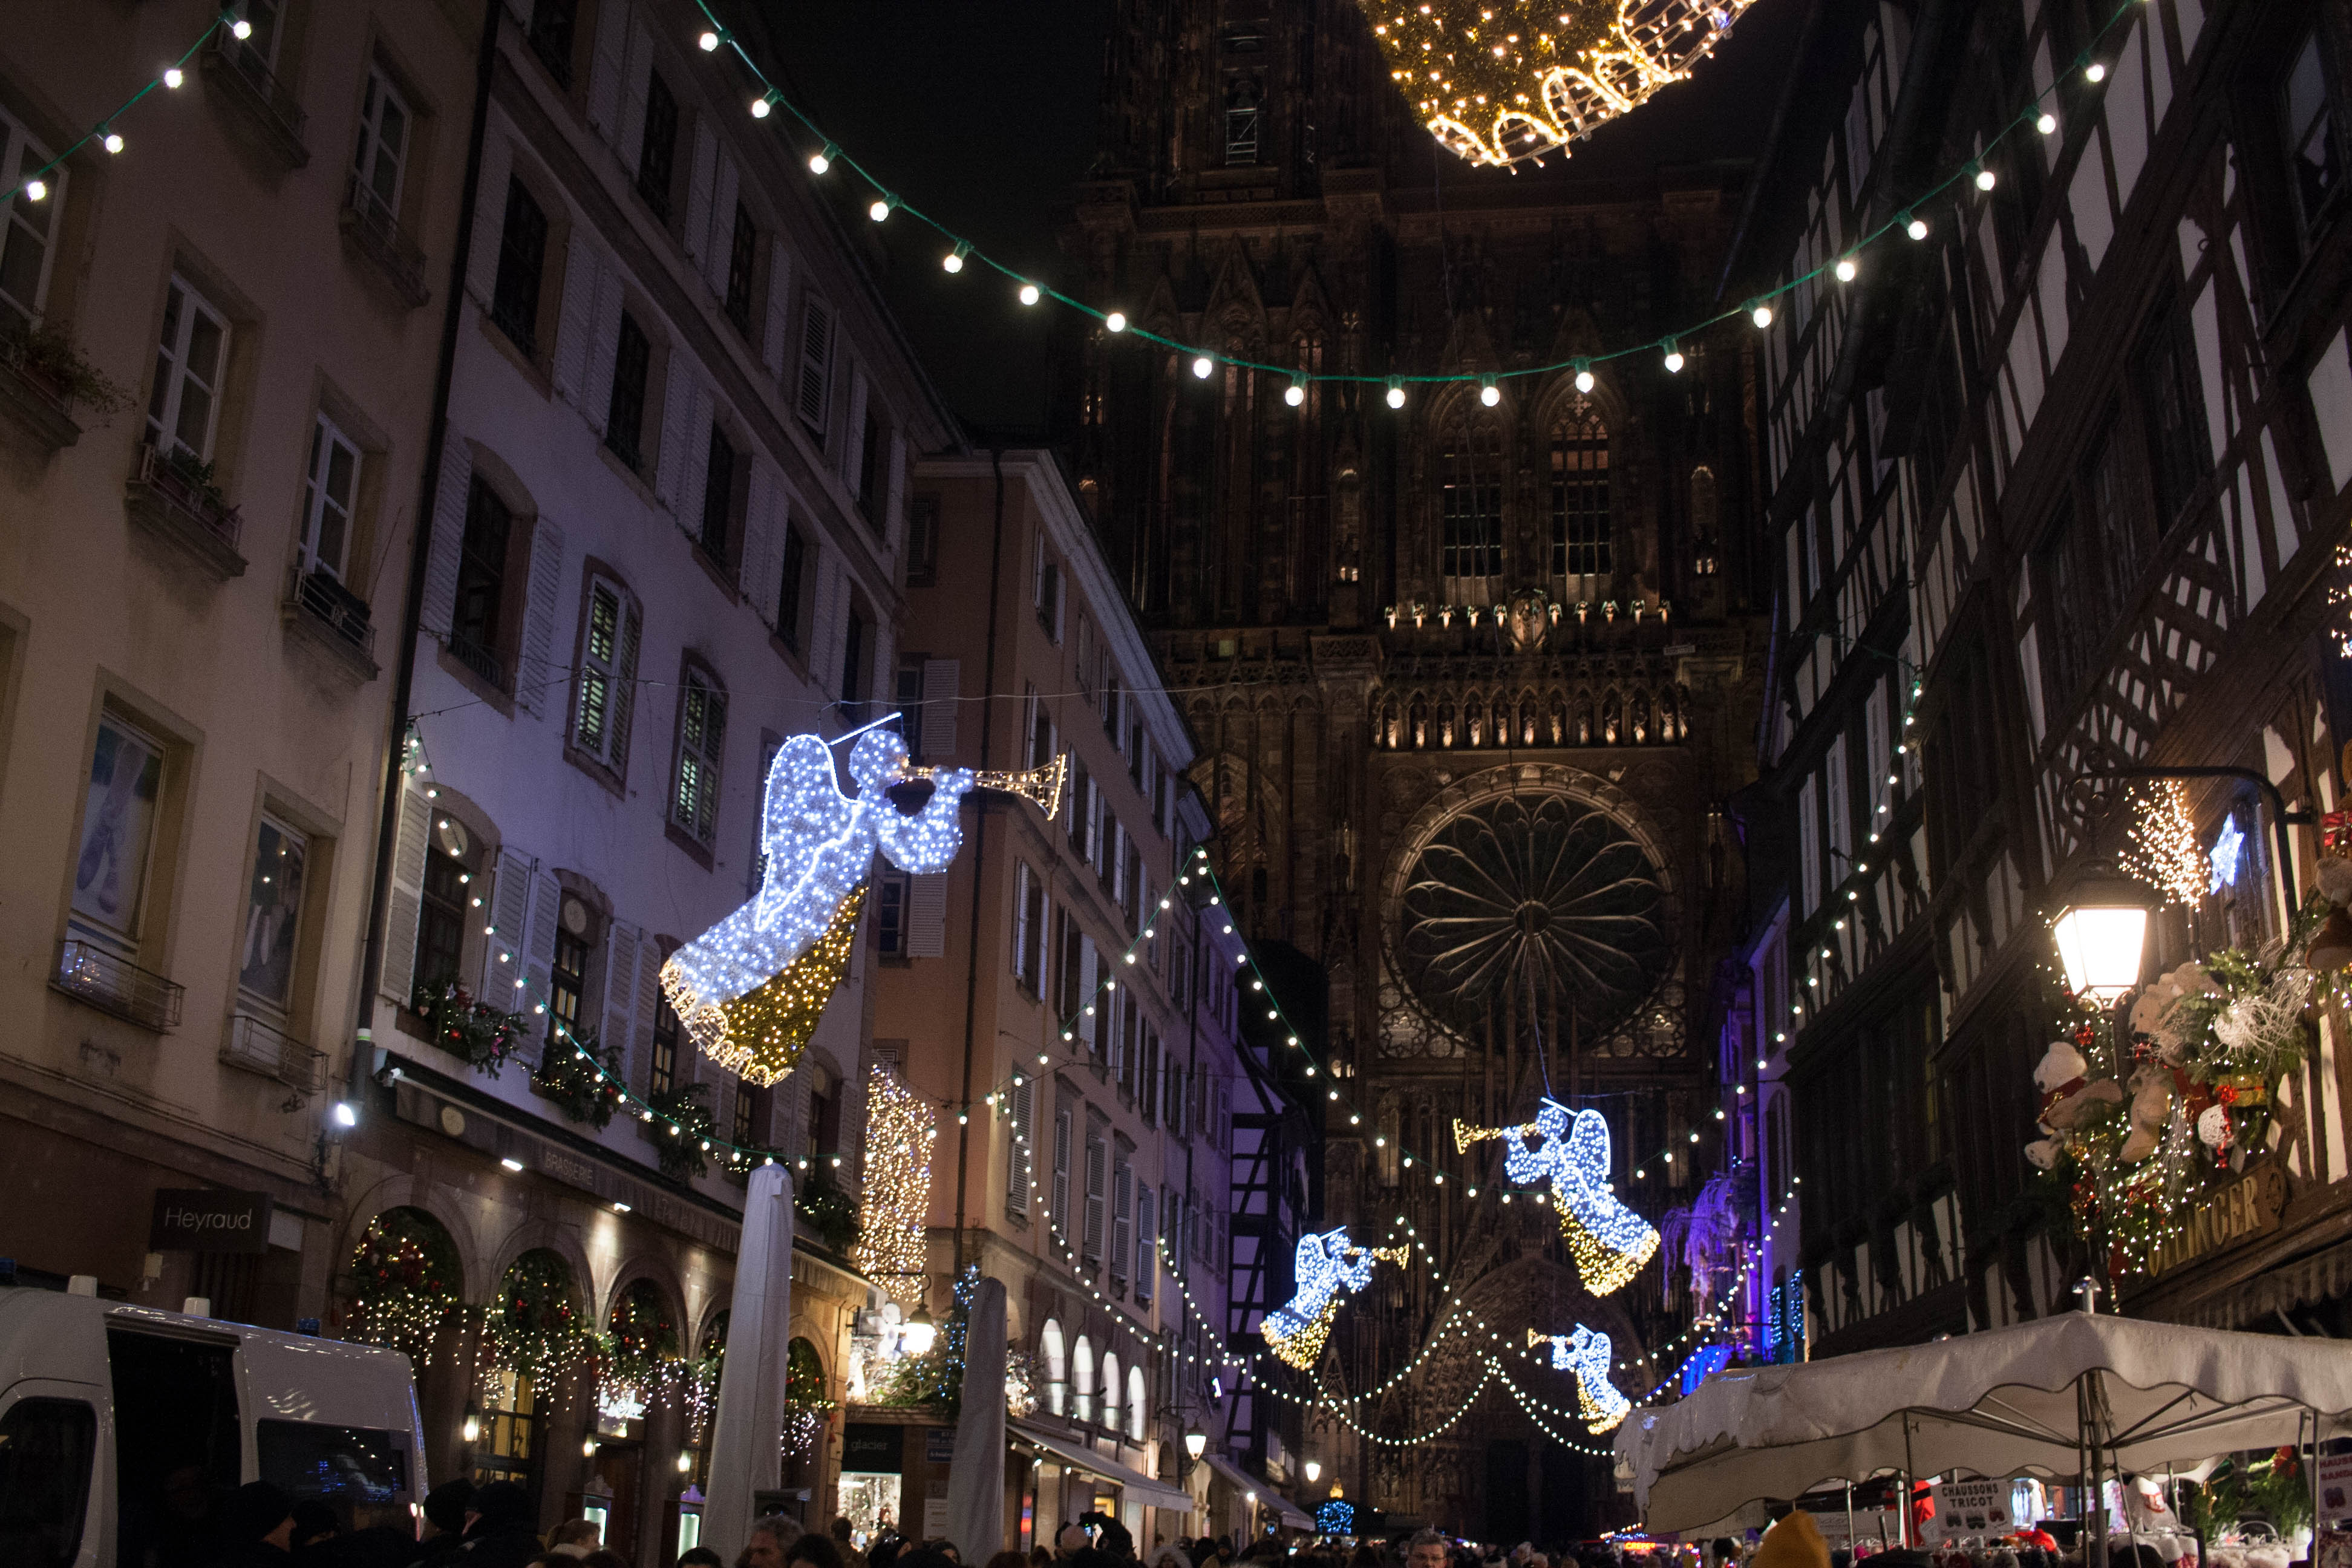 Le marché de Noël de Strasbourg, entre esprit de Noël et foire aux touristes